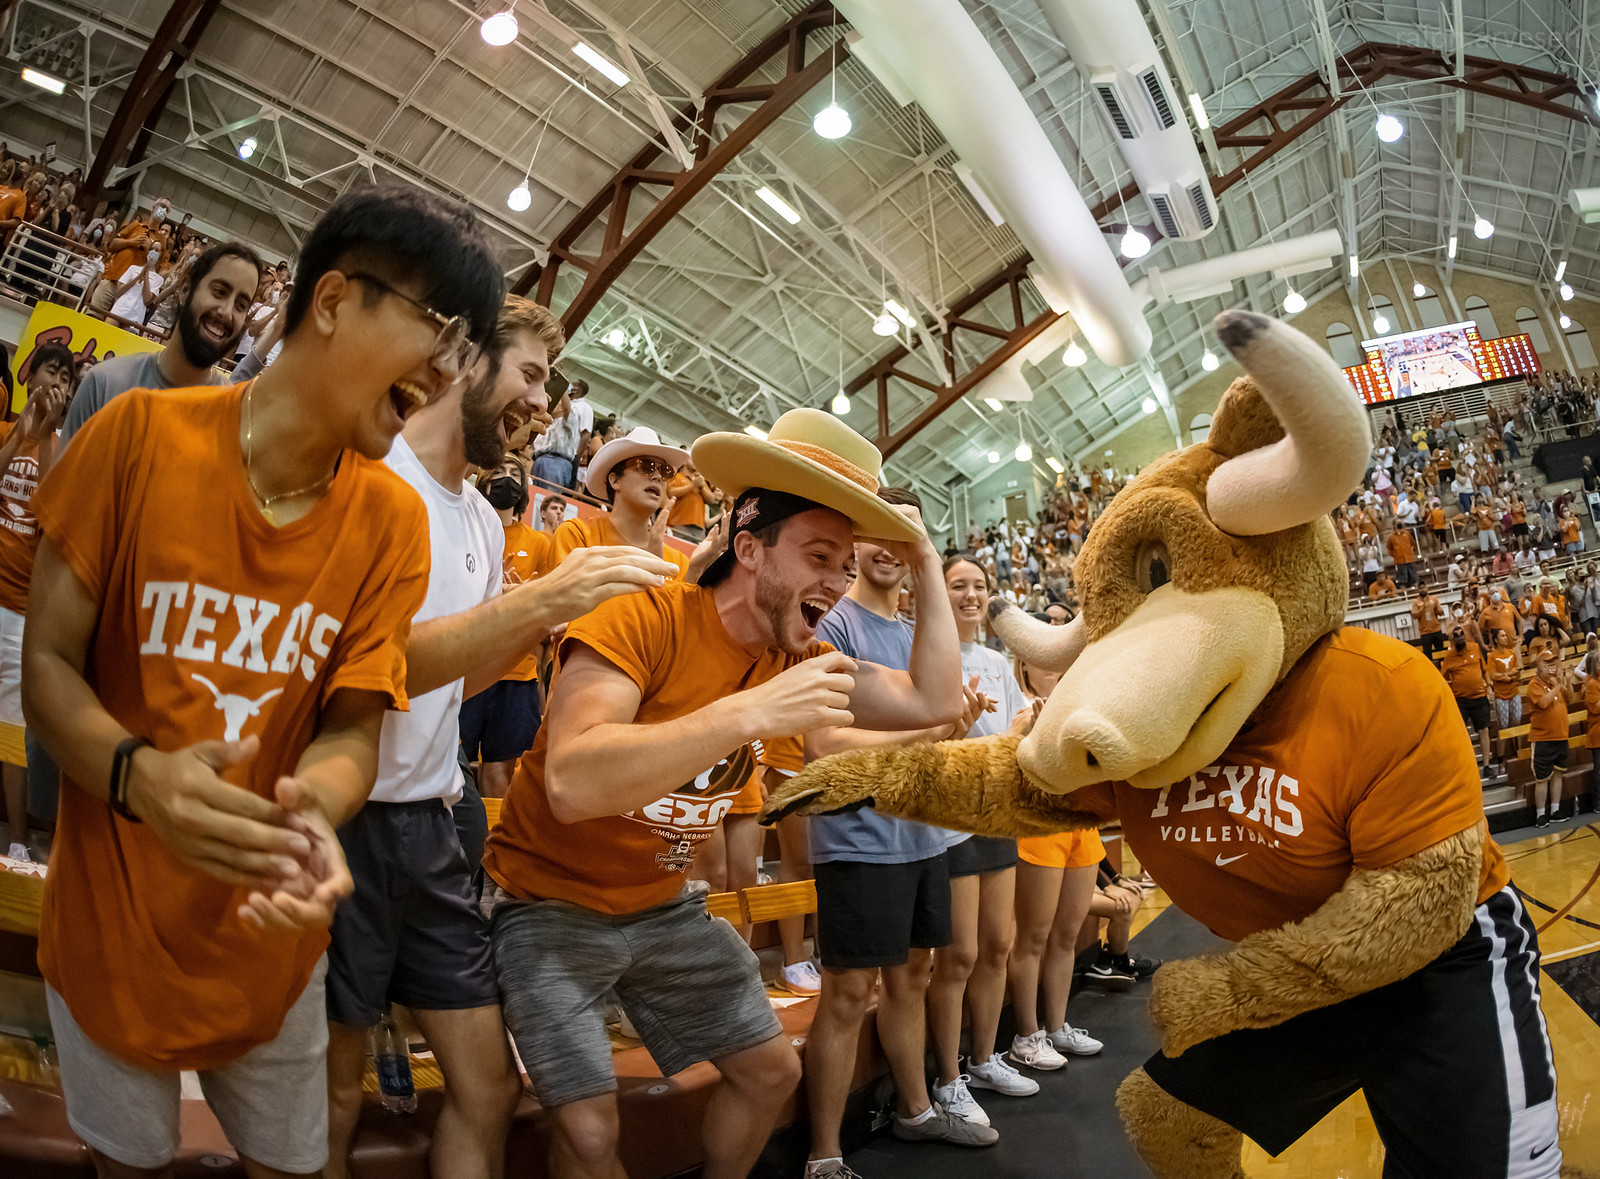 Texas Volleyball | Texas Review | Ralph Arvesen